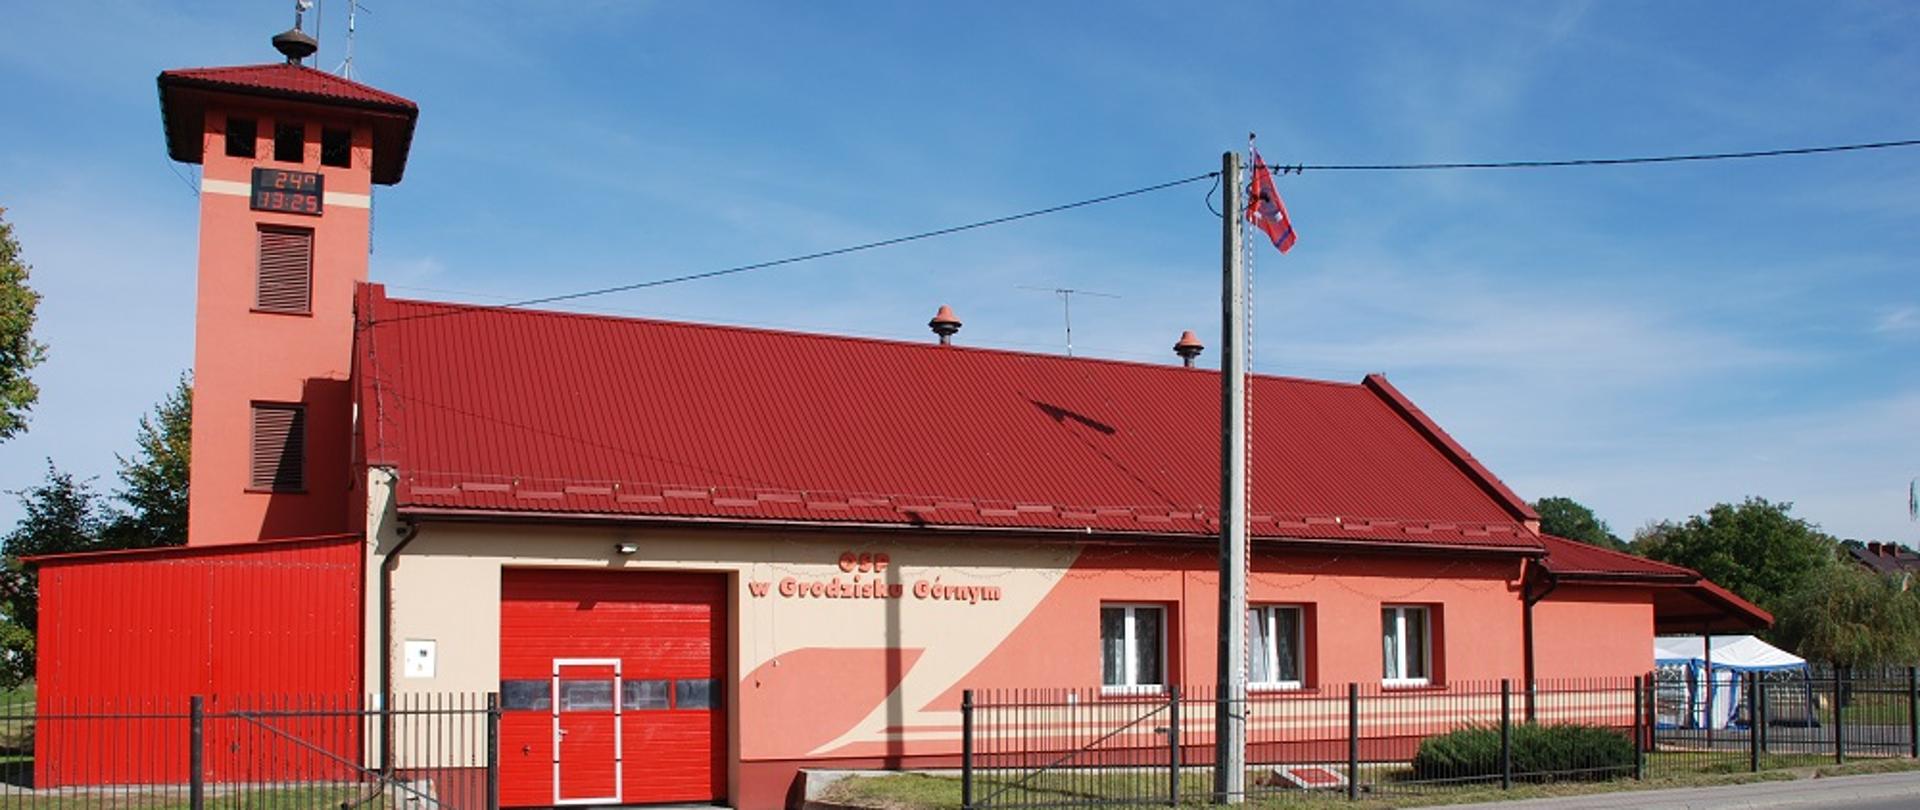 Czerwony, jednopiętrowy budynek z czerwonym, dachem, przy budynku wieża z zegarem i blaszany czerwony garaż. 